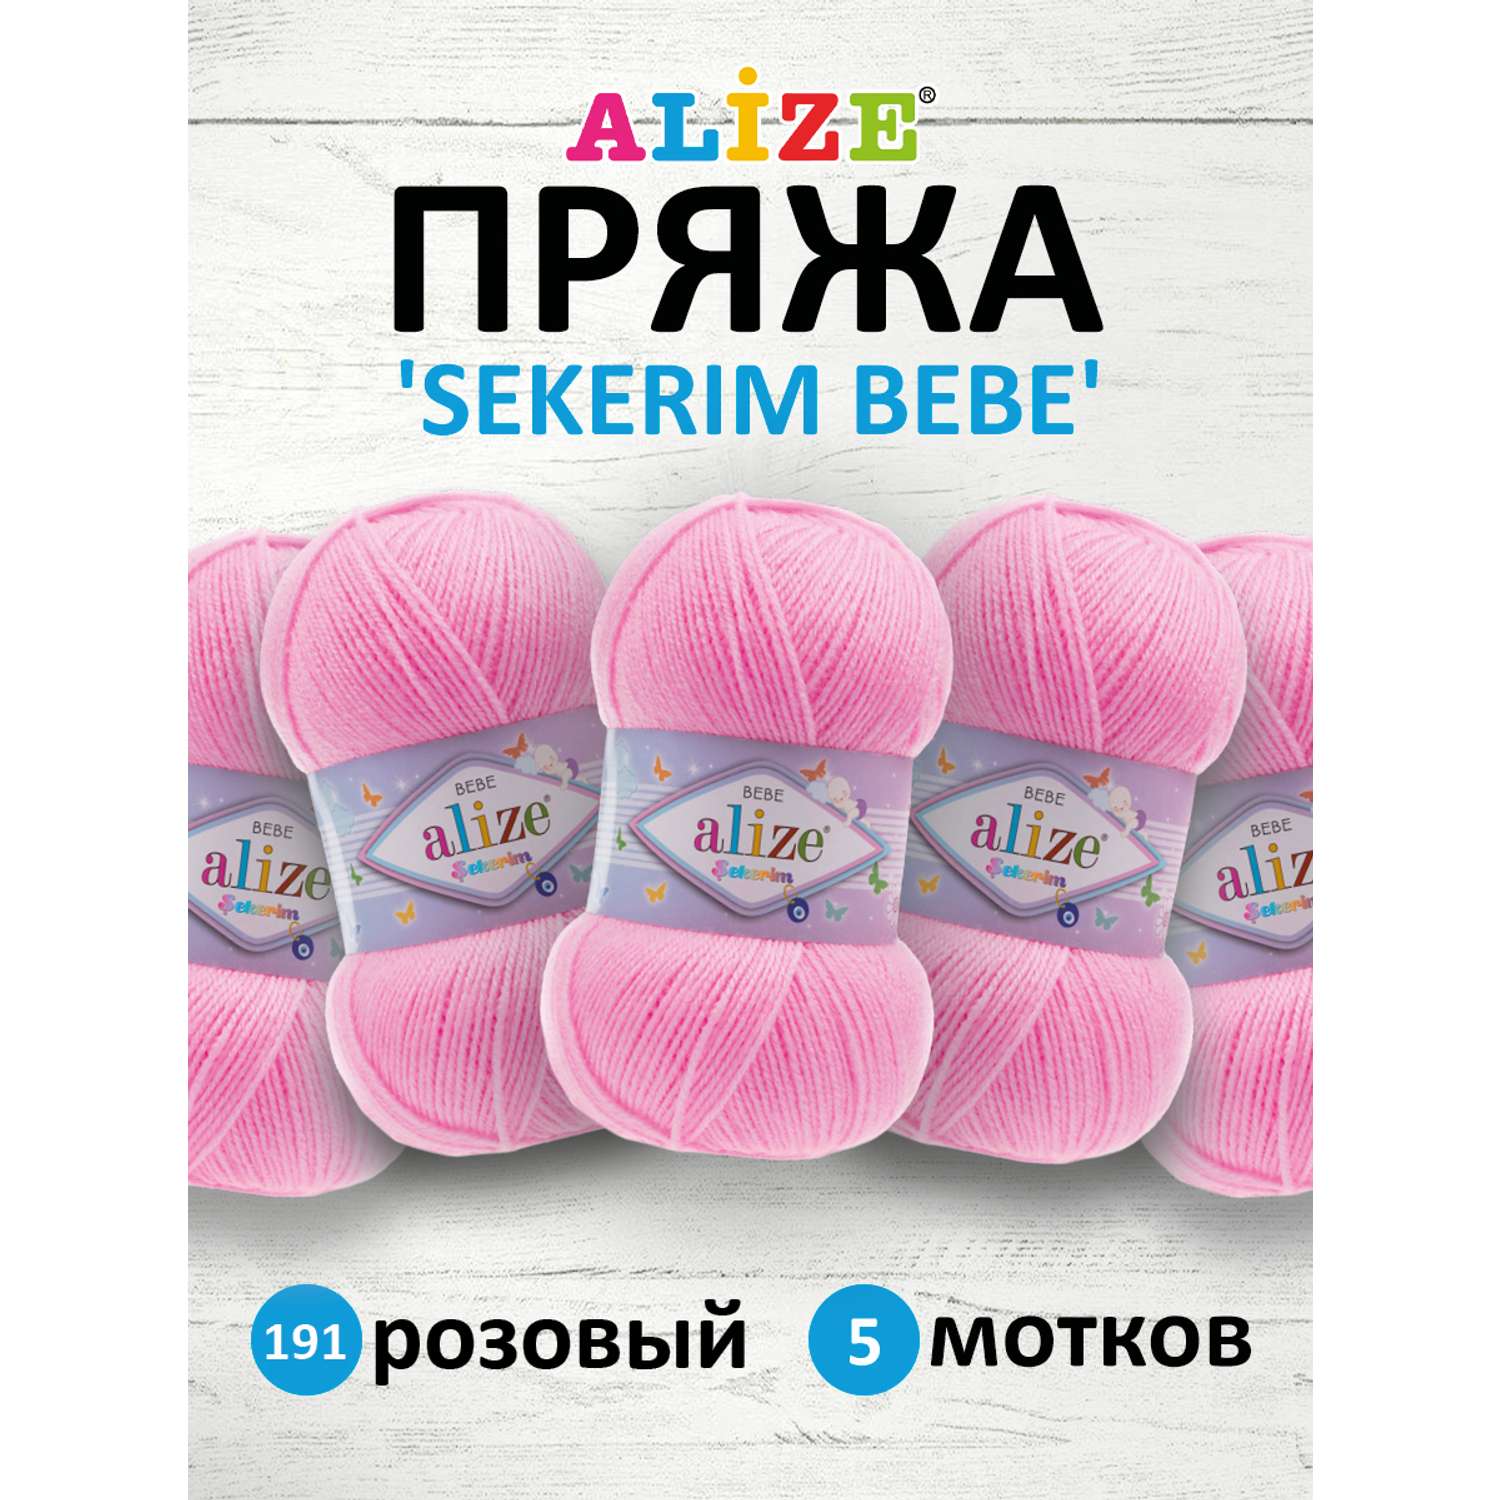 Пряжа для вязания Alize sekerim bebe 100 гр 320 м акрил для мягких игрушек 191 розовый 5 мотков - фото 1